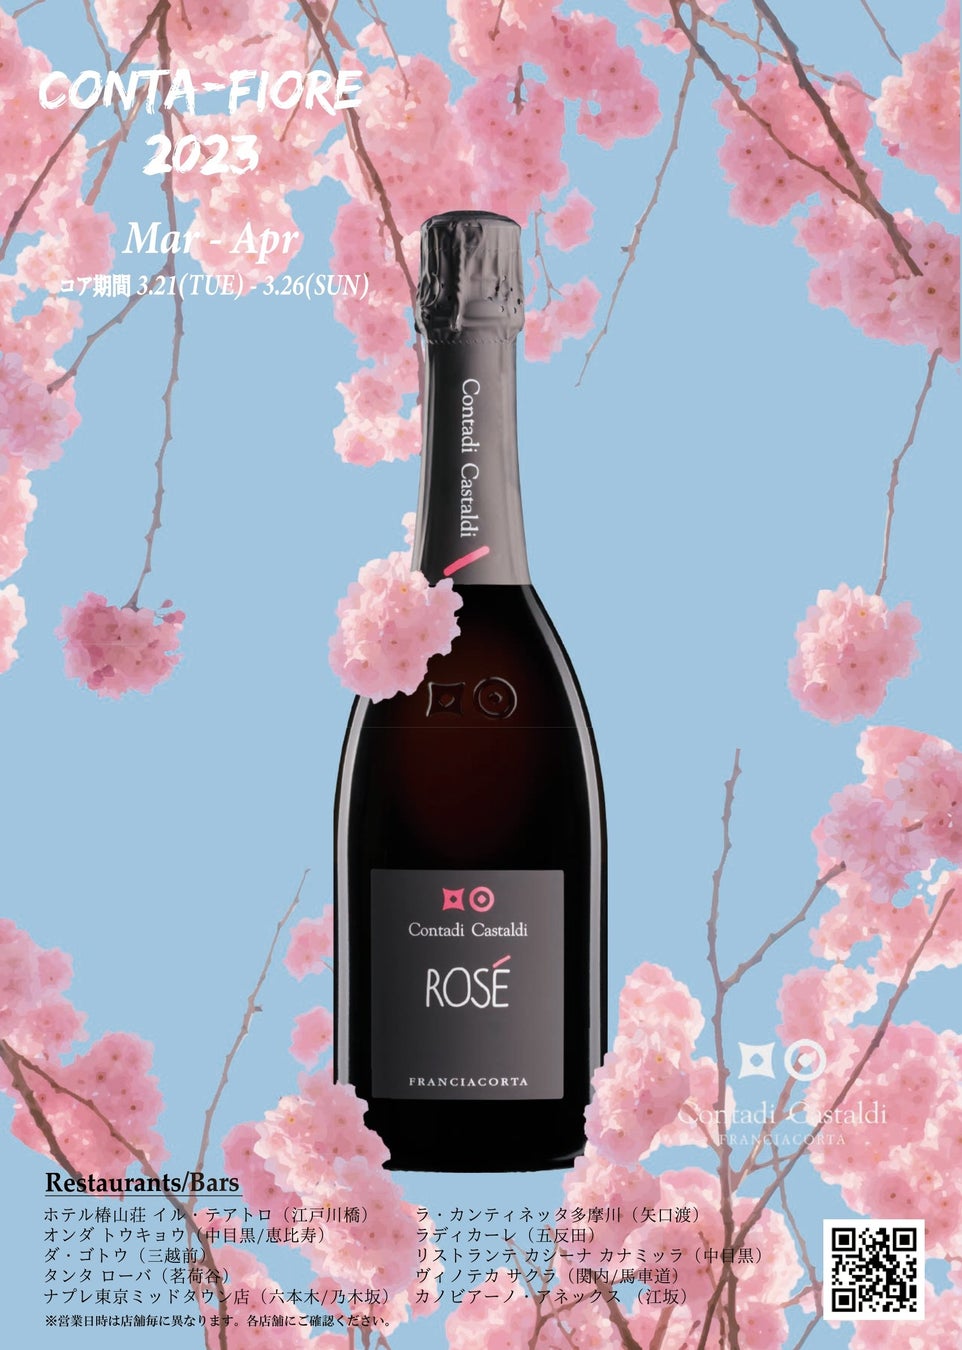 桜を見ながらフランチャコルタ 「コンタディ・カスタルディ」ロゼを楽しむイベント『Conta-Fiore（コンタフィオーレ）』開催のお知らせ